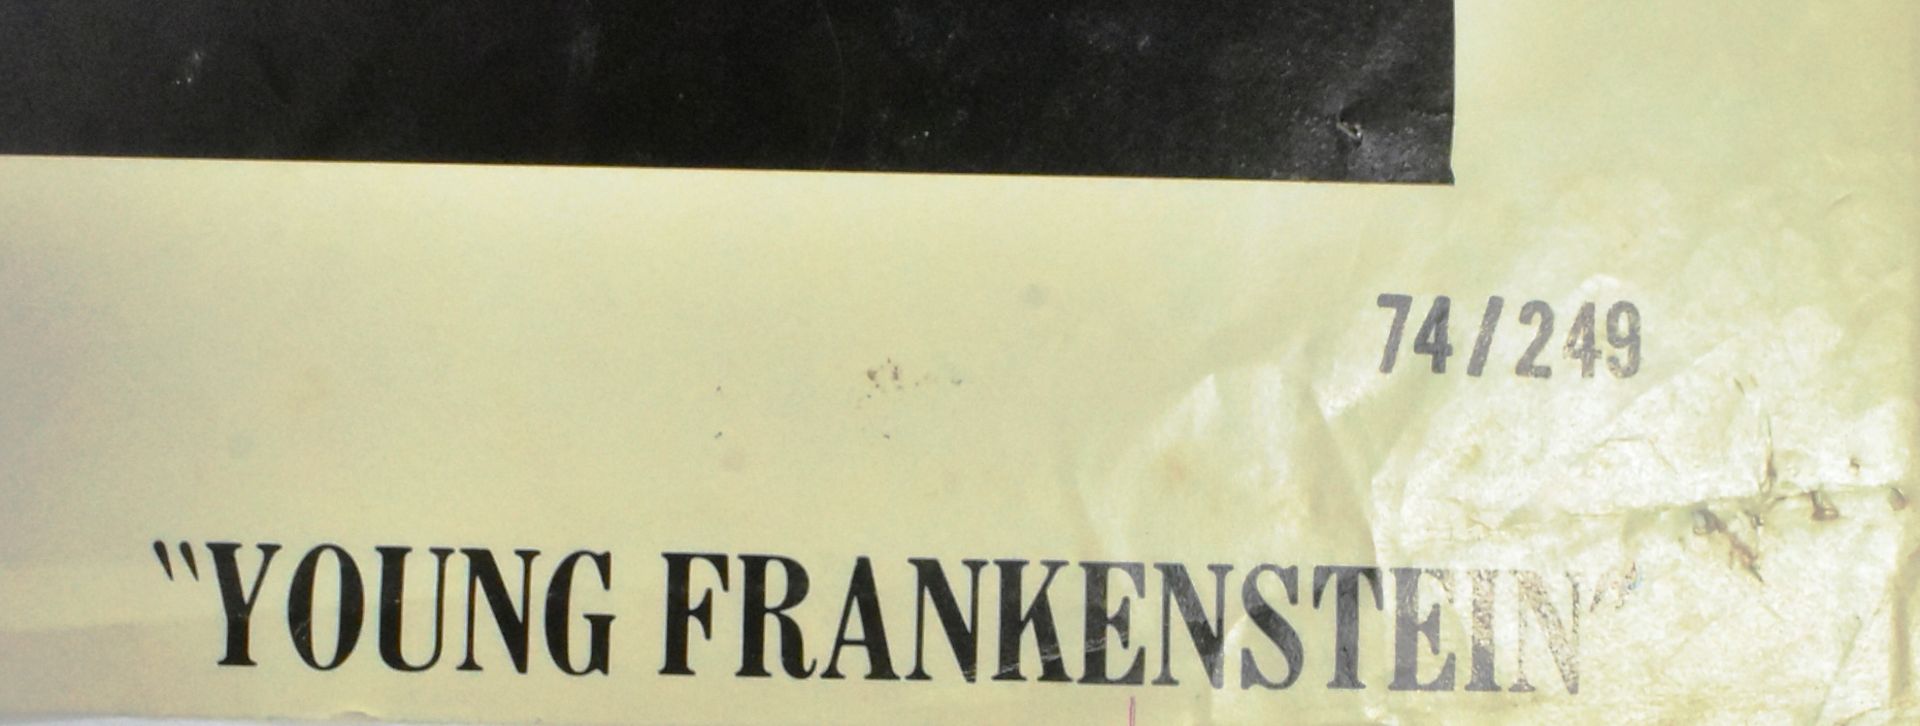 YOUNG FRANKENSTEIN (1974) - US ONE SHEET MOVIE POSTER - Bild 5 aus 5